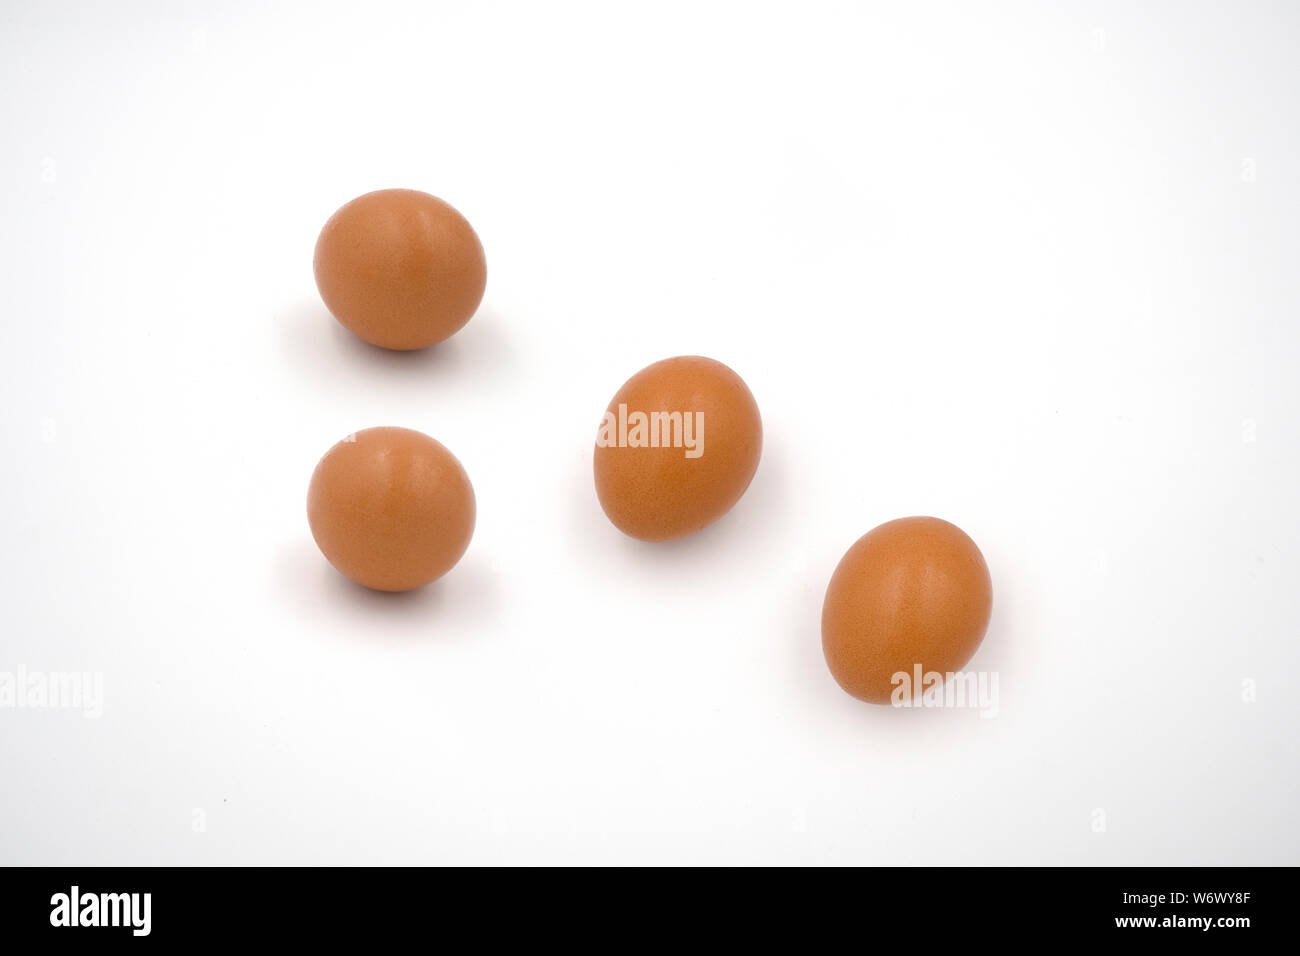 Fresh eggs isolated on white background Stock Photo